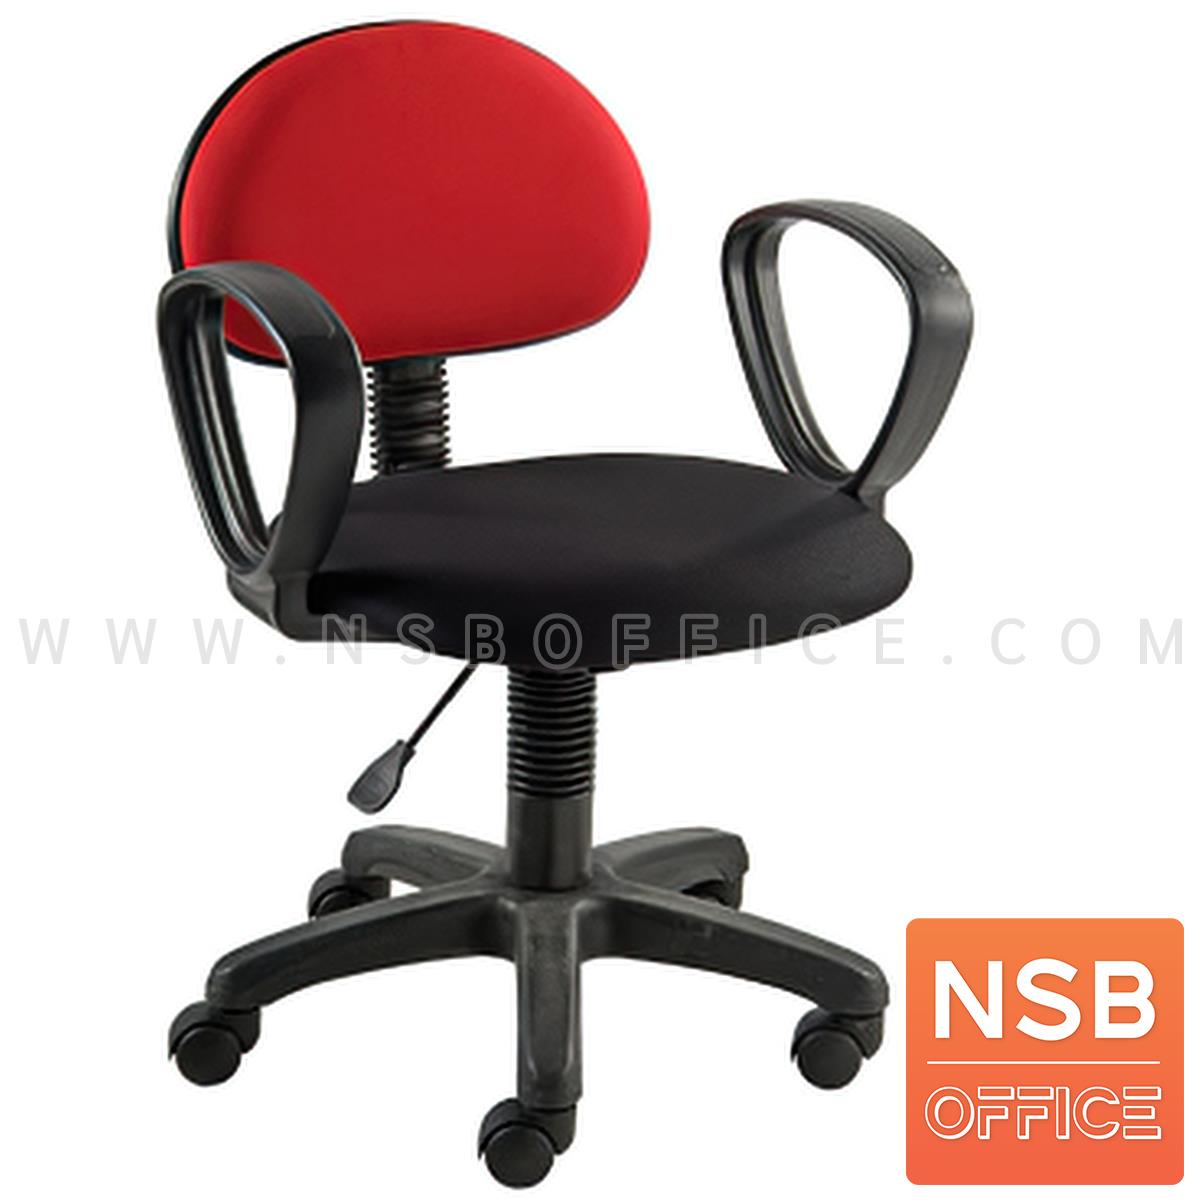 B03A514:เก้าอี้สำนักงาน รุ่น Blackrock (แบล็คร็อค)  ปรับระดับสูง-ต่ำได้ ขาพลาสติก 